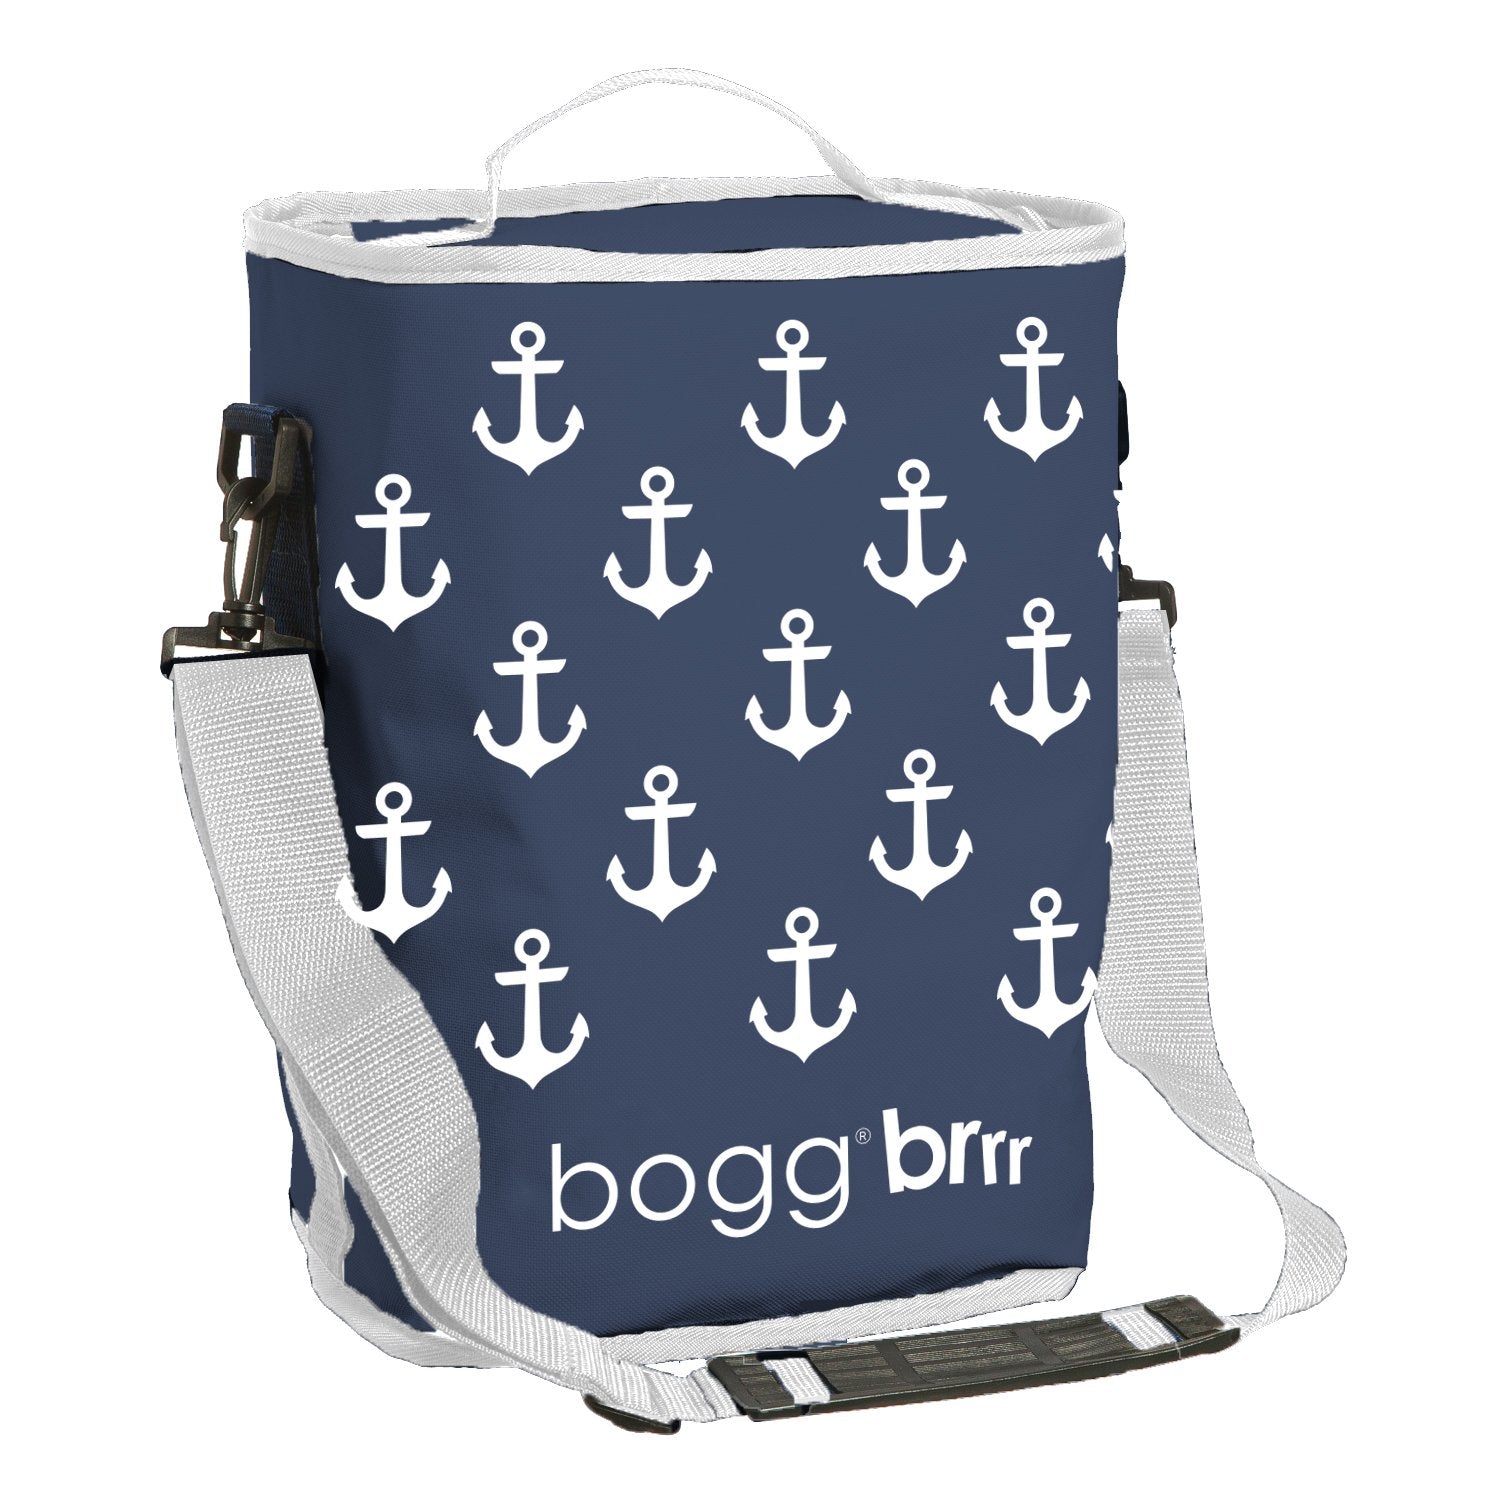 Bogg Bag Original Bogg Palm Print Tote Bag